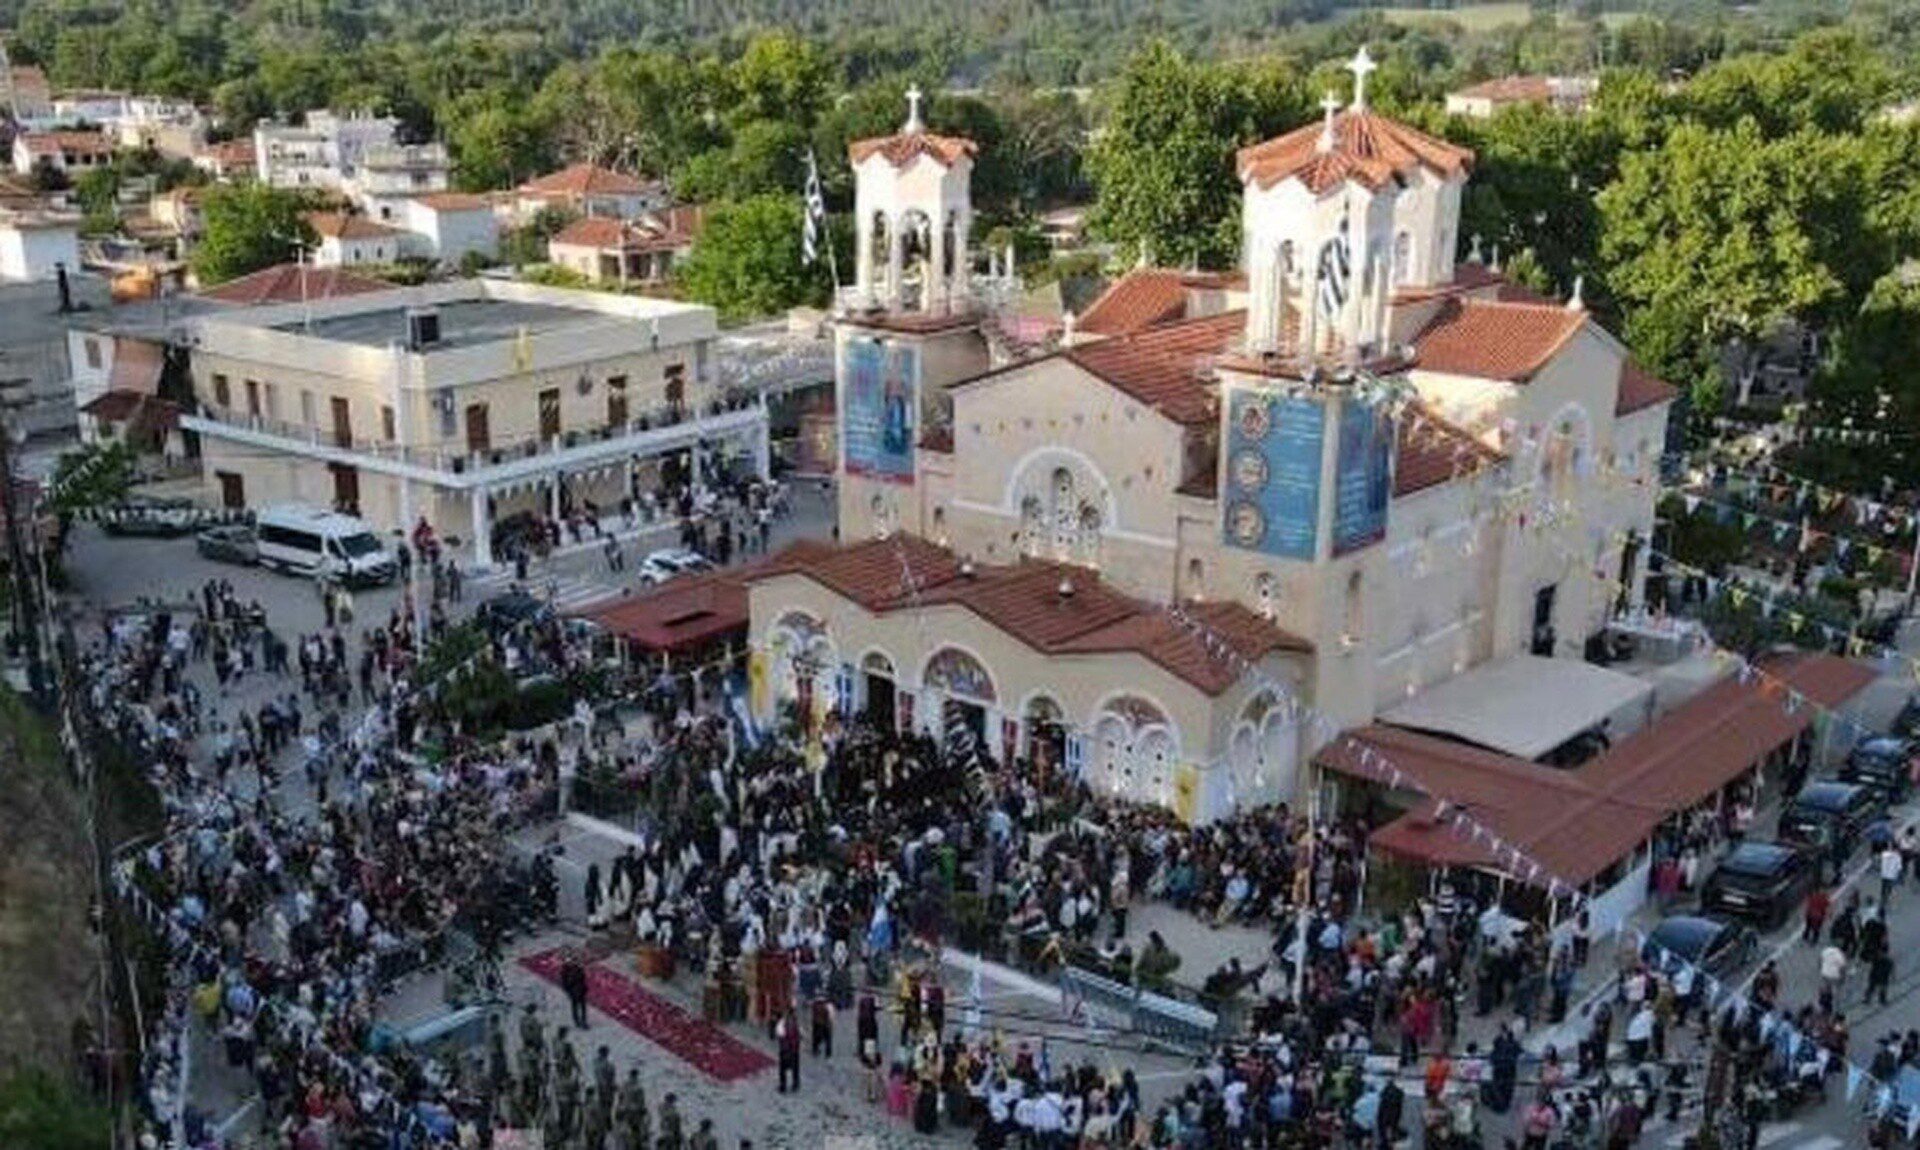 Συγκινητική η τεράστια αγάπη του λαού για τον άγιο Ιωάννη τον Ρώσσο – Γέμισε το Προκόπι Ευβοίας με χιλιάδες προσκυνητές από όλη την Ελλάδα